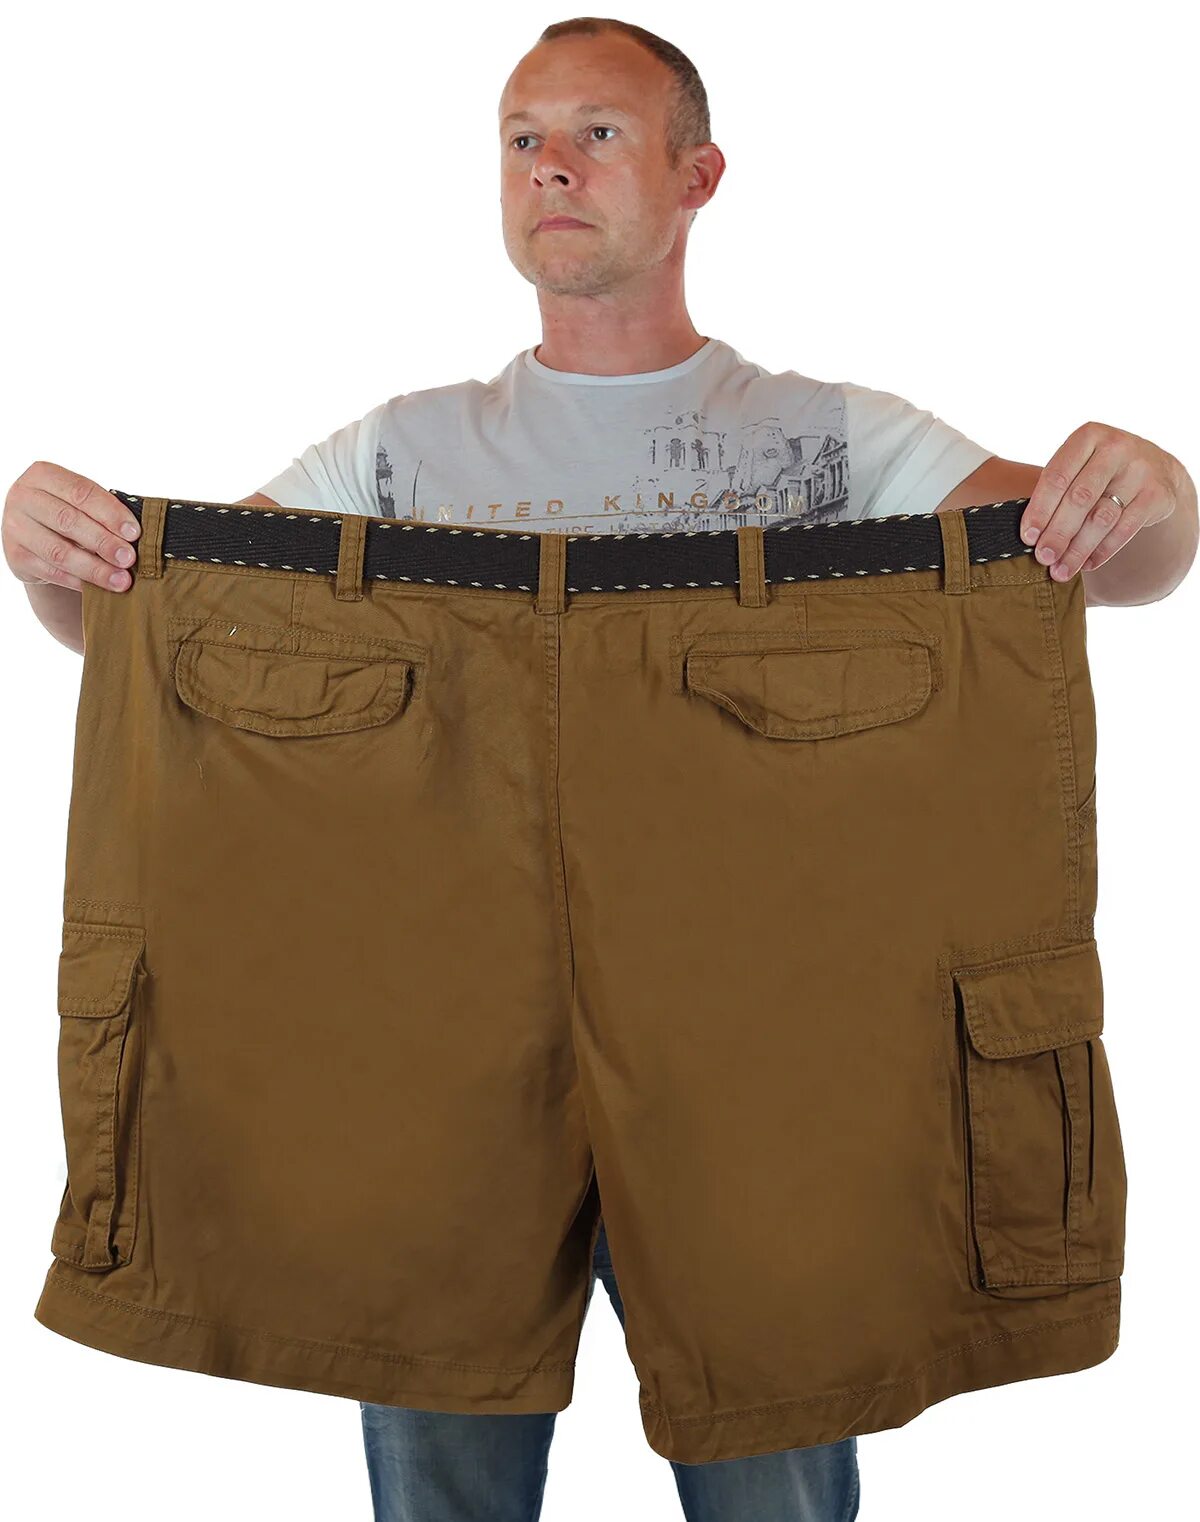 Мужские шорты баталы Foundry, США. Шорты огромные мужские. Шорты для полных мужчин. Широкие шорты мужские. Больше shorts